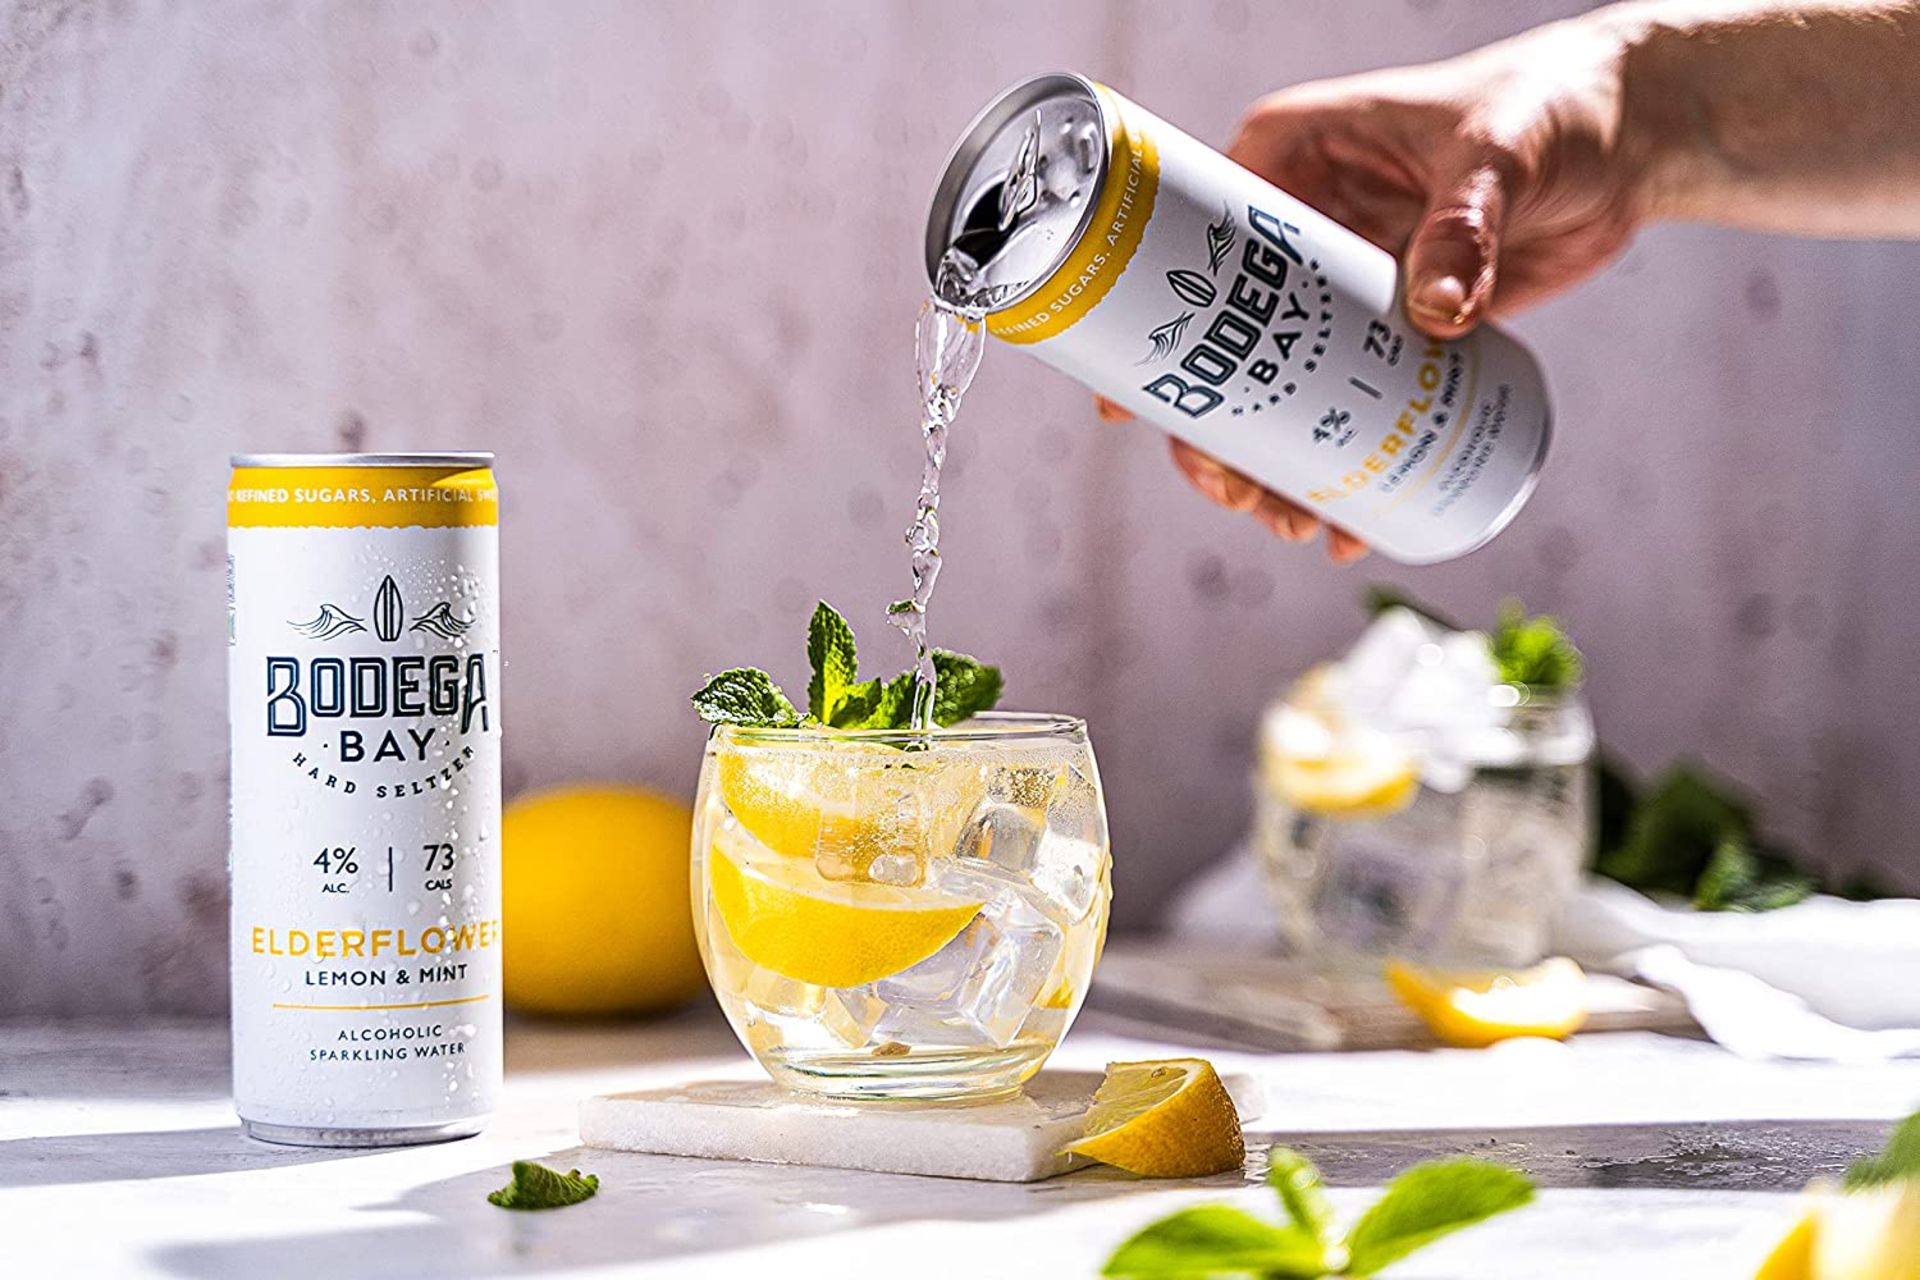 24 x Bodega Bay Hard Seltzer 250ml Alcoholic Sparkling Water Drinks - Elderflower Lemon & Mint - - Image 2 of 9